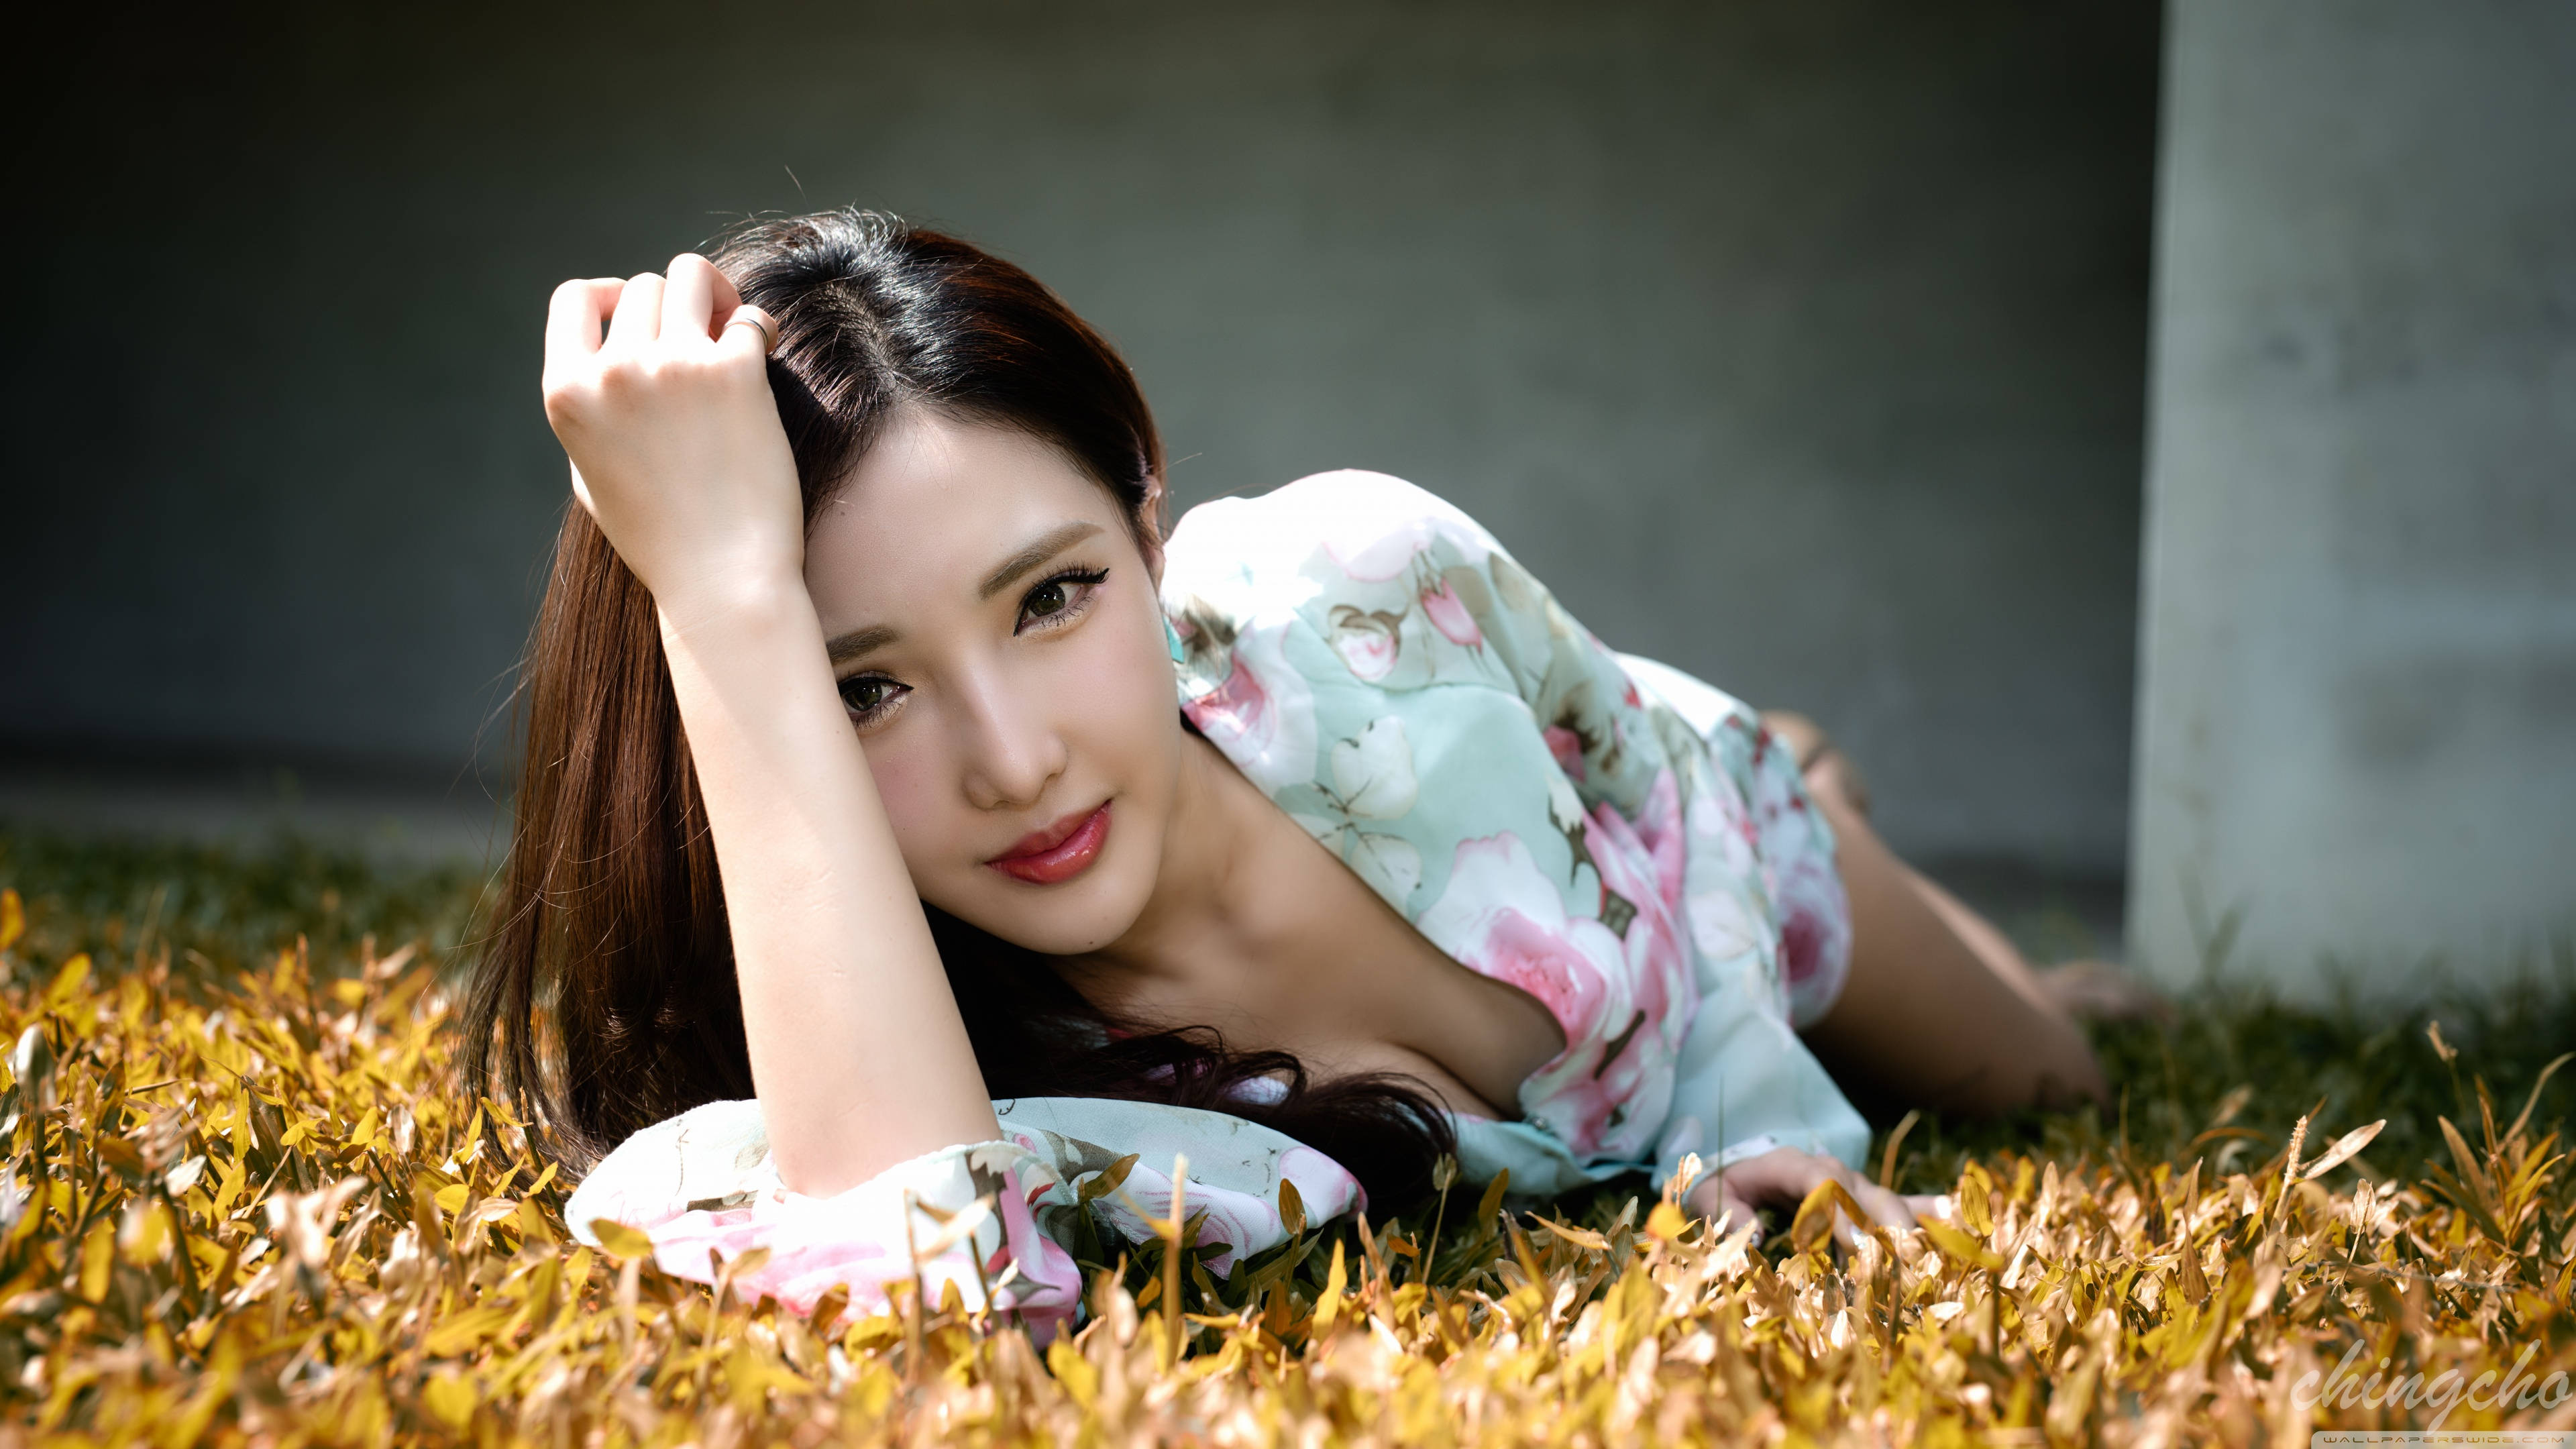 Korean Girl Posing On The Grass Wallpaper